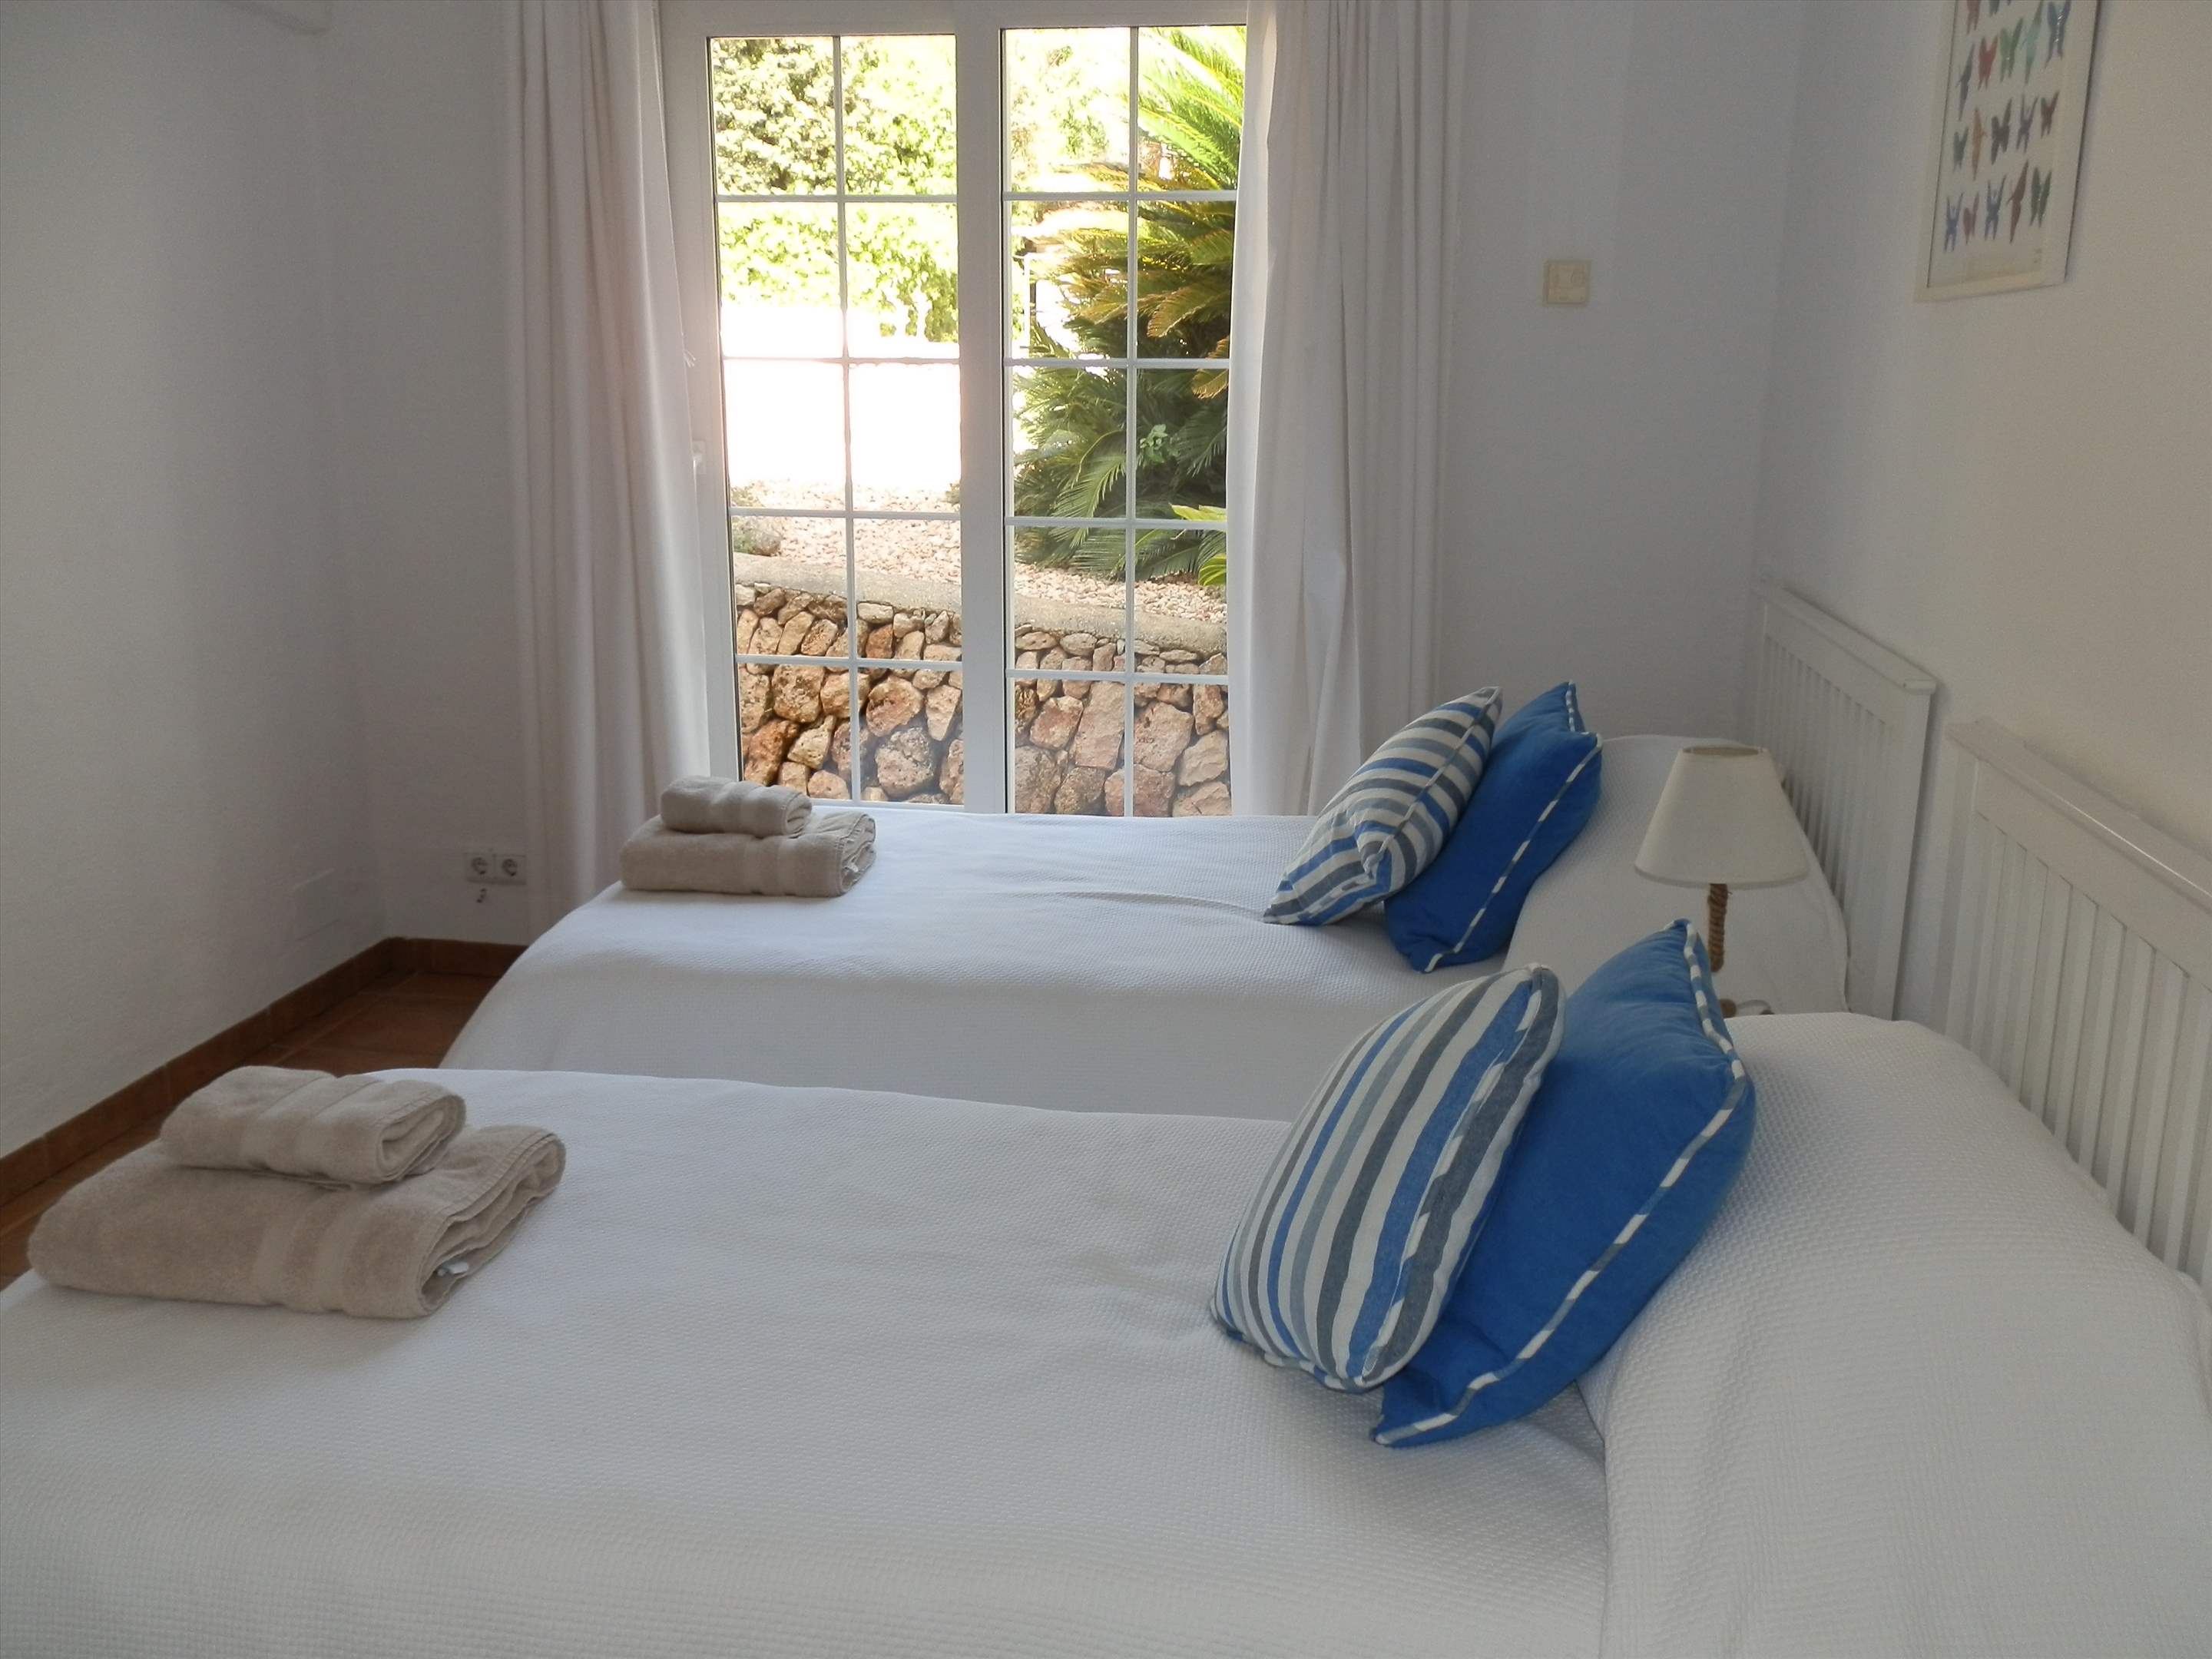 Casa del Mar de Ana-Cristo, 6 Bedroom rate, 6 bedroom villa in Mahon, San Luis & South East, Menorca Photo #20